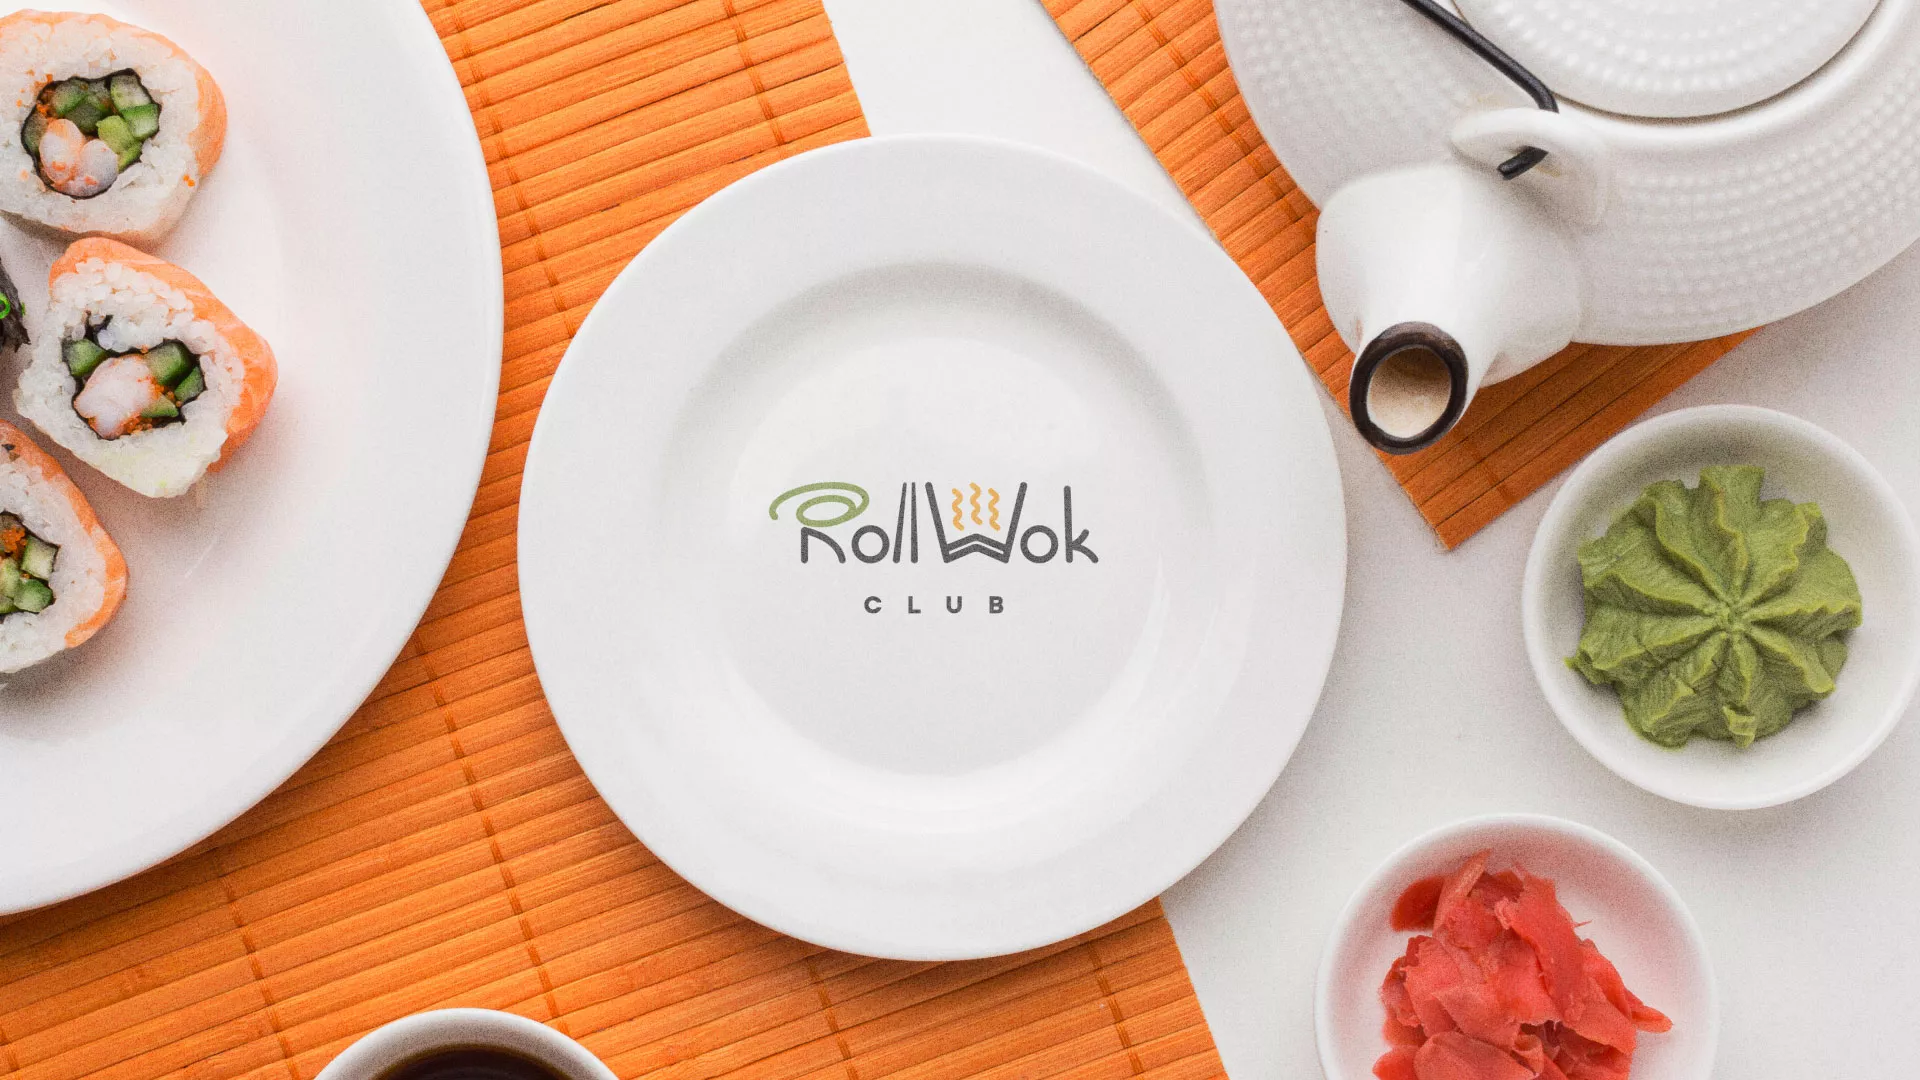 Разработка логотипа и фирменного стиля суши-бара «Roll Wok Club» в Железногорске-Илимском